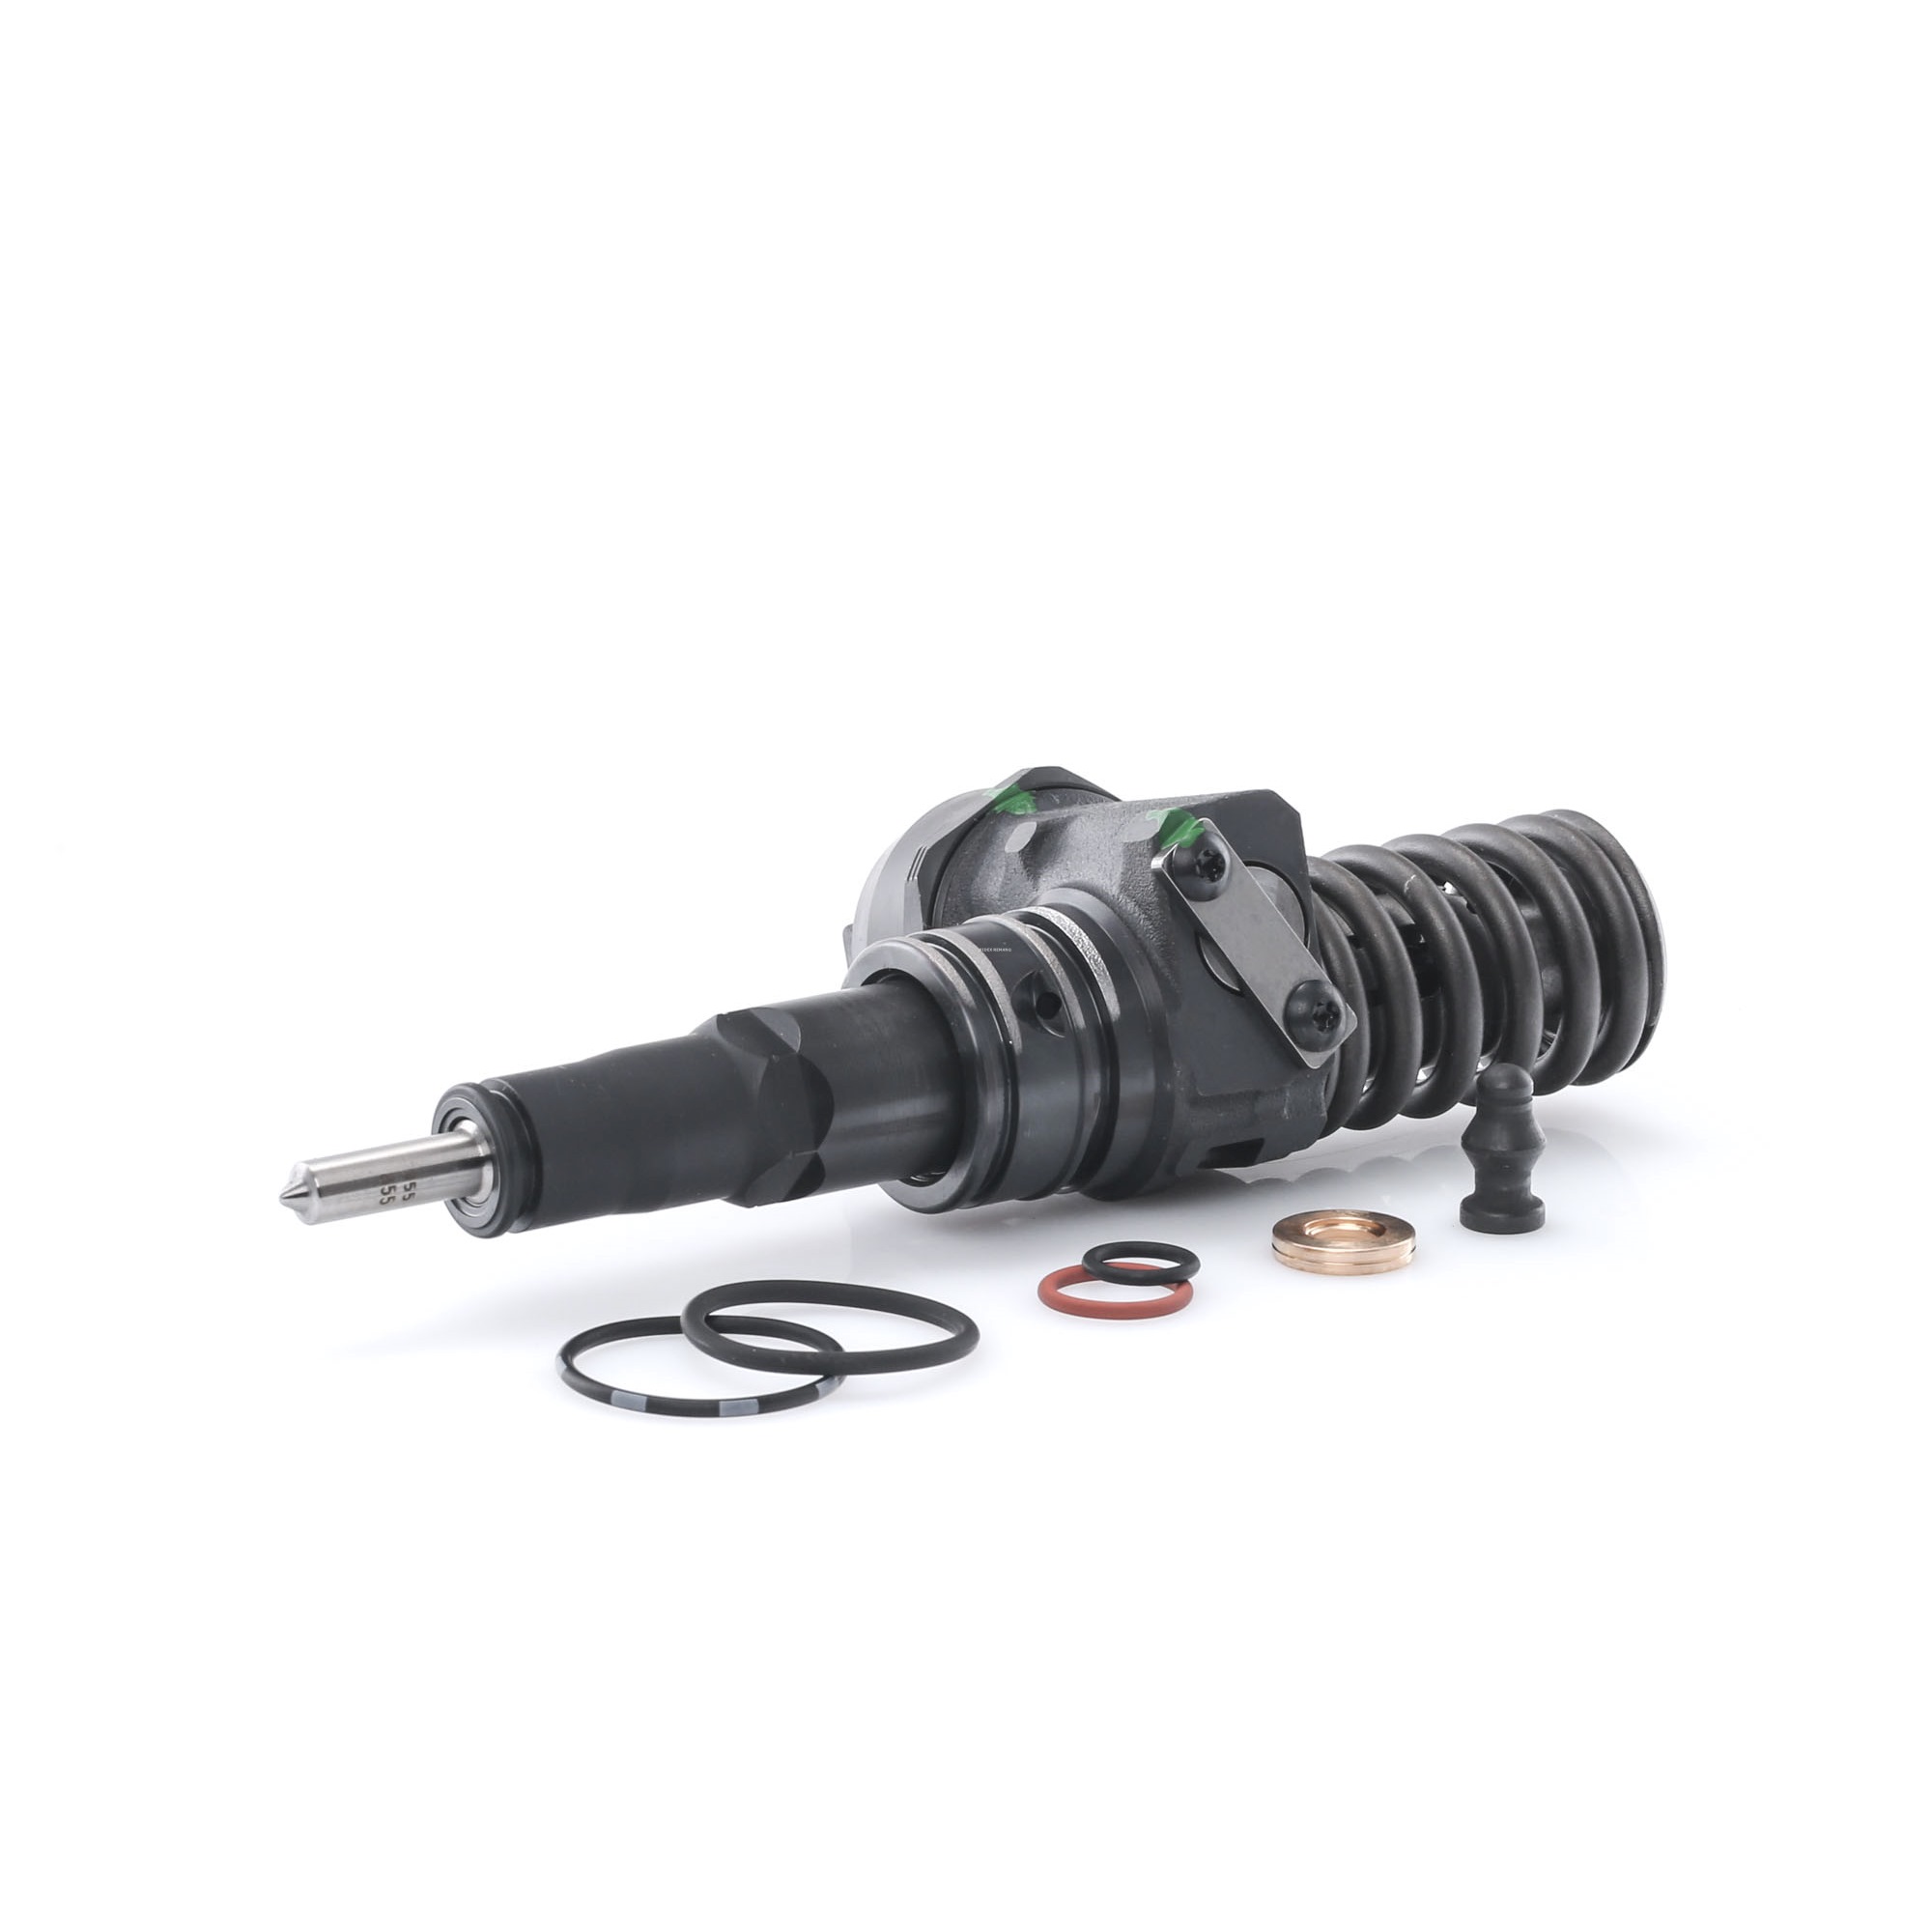 RIDEX REMAN Pump and Nozzle Unit 3930I0020R buy